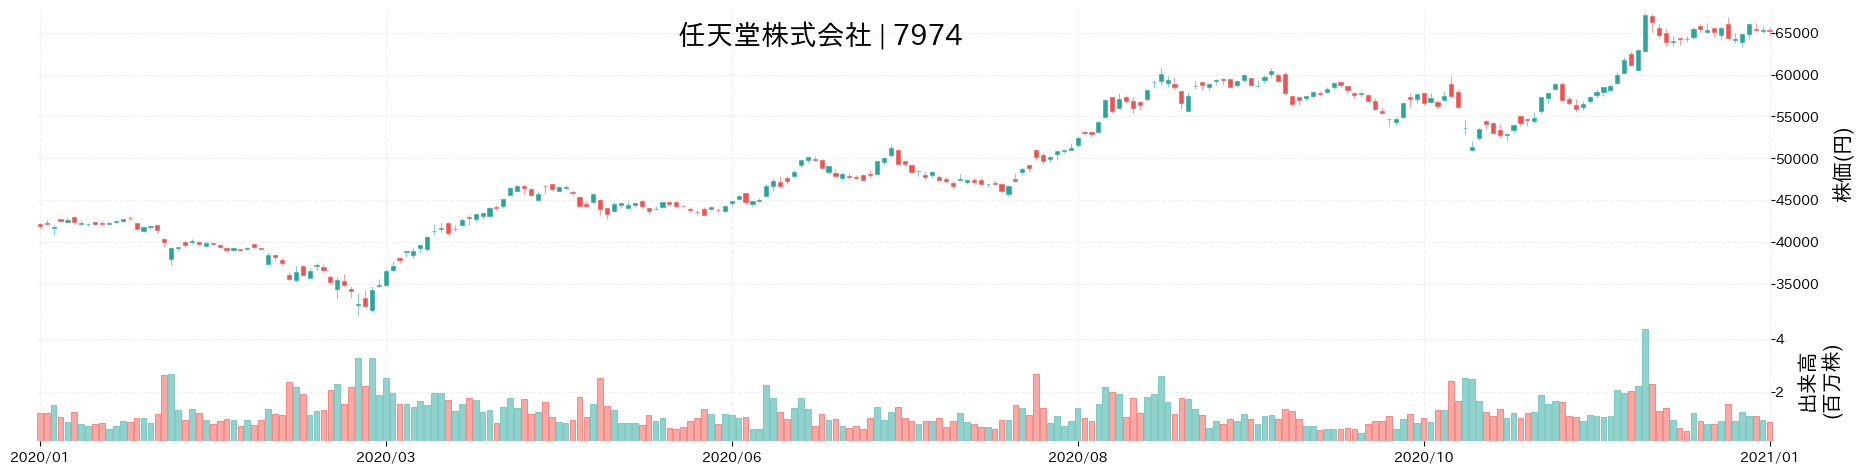 任天堂の株価推移(2020)